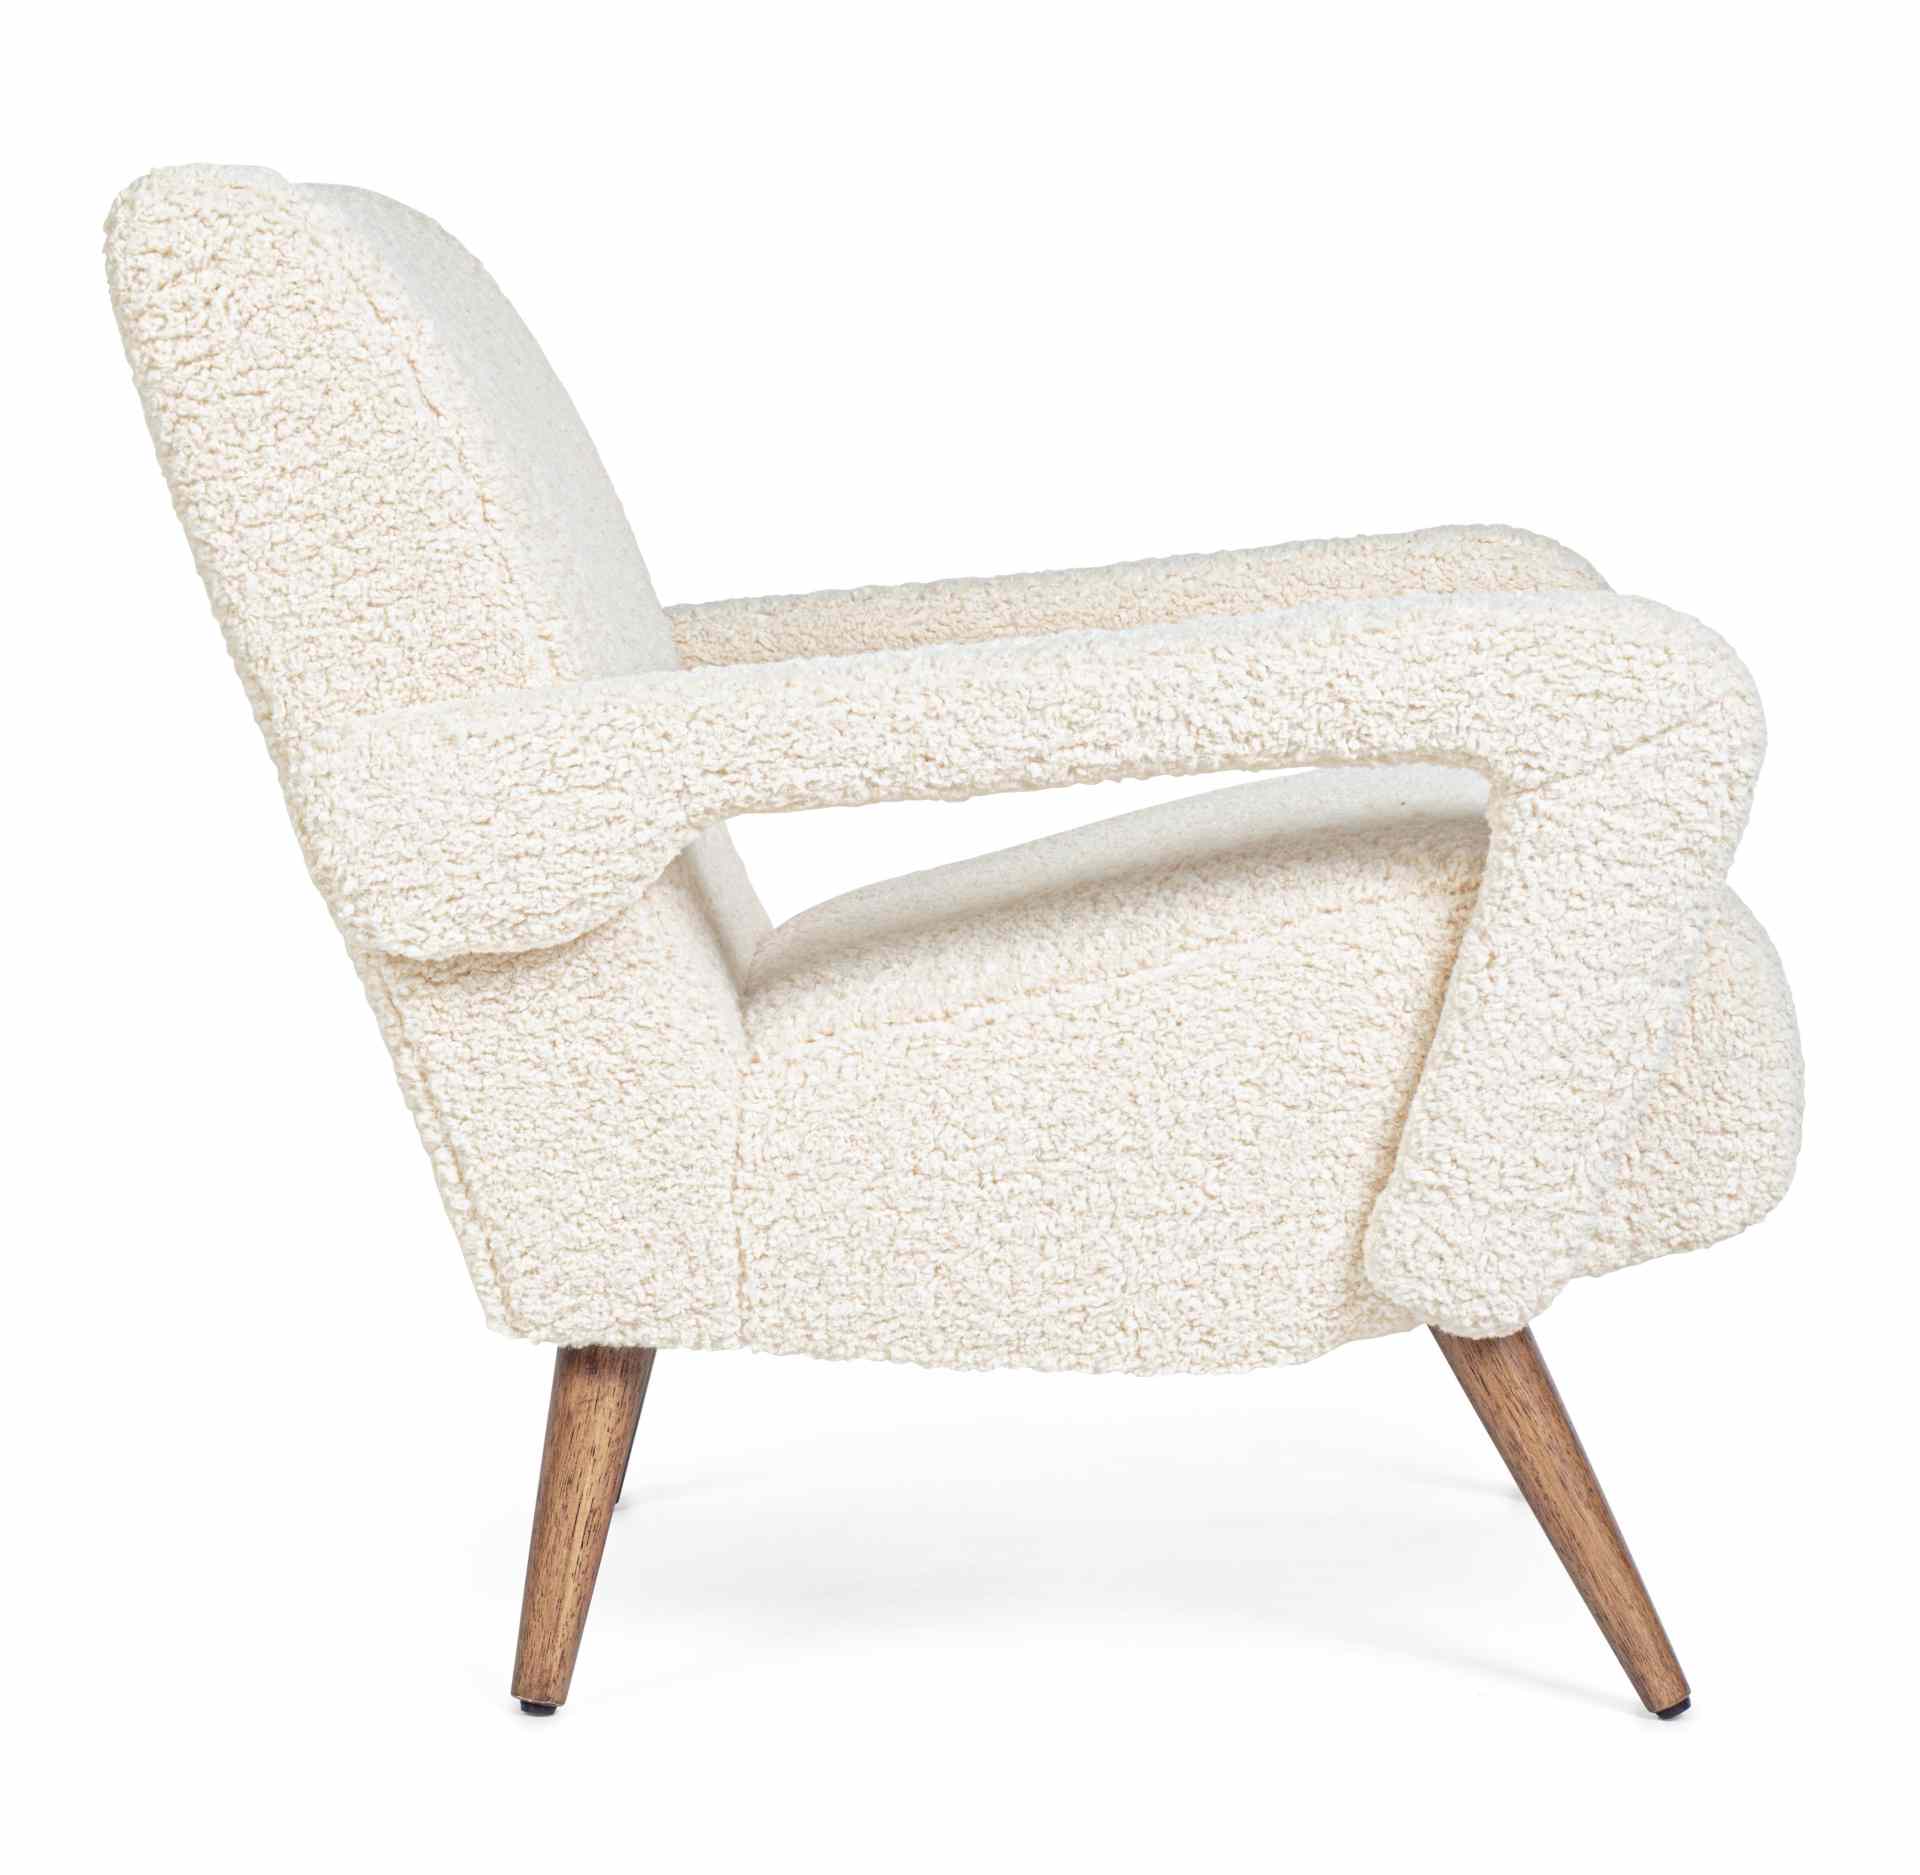 Der Sessel Berna überzeugt mit seinem modernen Design. Gefertigt wurde er aus Stoff in Teddy-Optik, welcher einen weißen Farbton besitzt. Das Gestell ist aus Kautschukholz und hat eine natürliche Farbe. Der Sessel besitzt eine Sitzhöhe von 45 cm. Die Brei